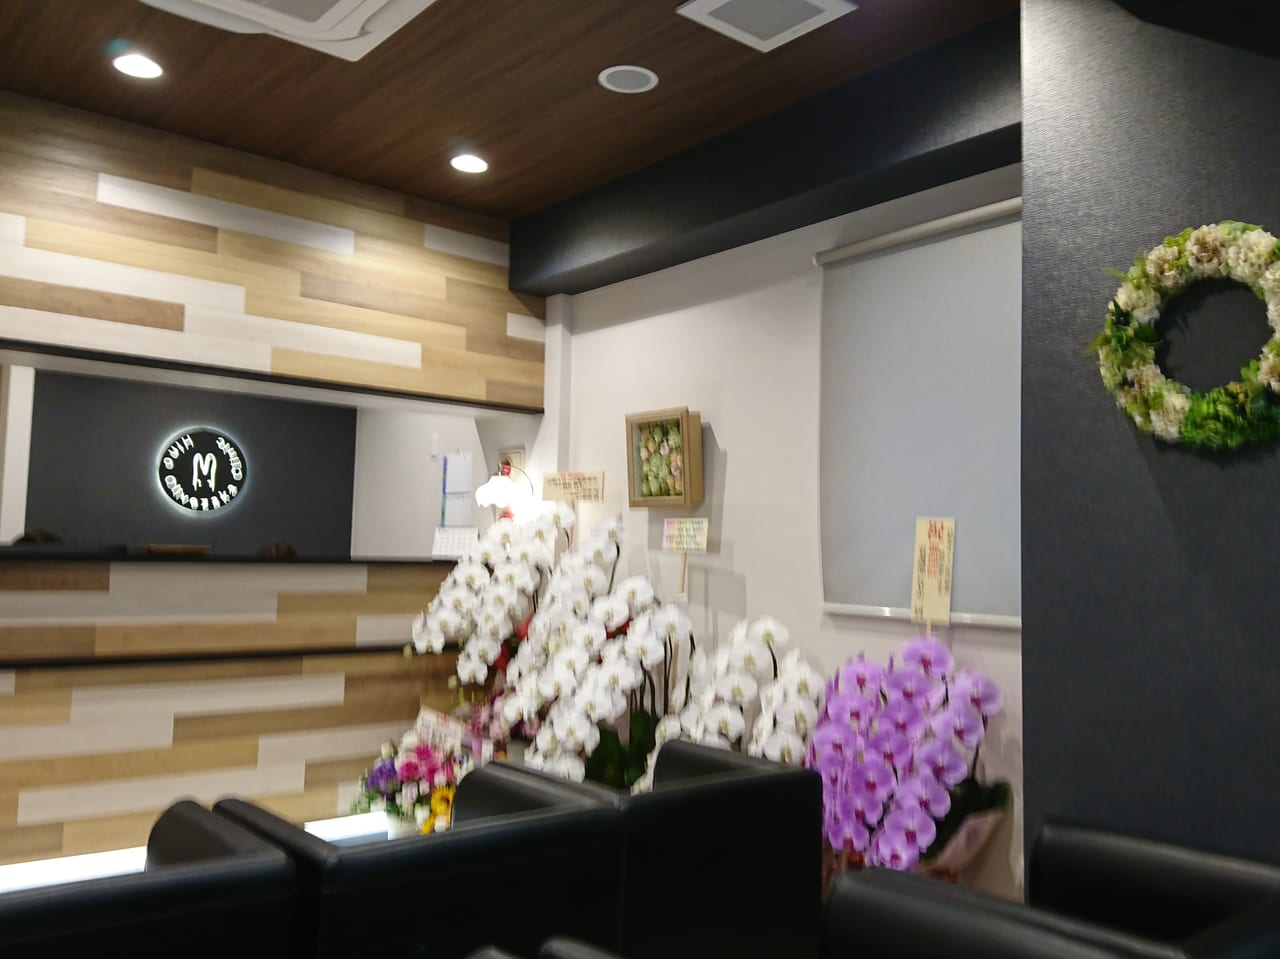 【日野市】日野駅前に心療内科・精神科の「日野オリーブ坂診療所」が2019年7月1日開院しました。 日野市